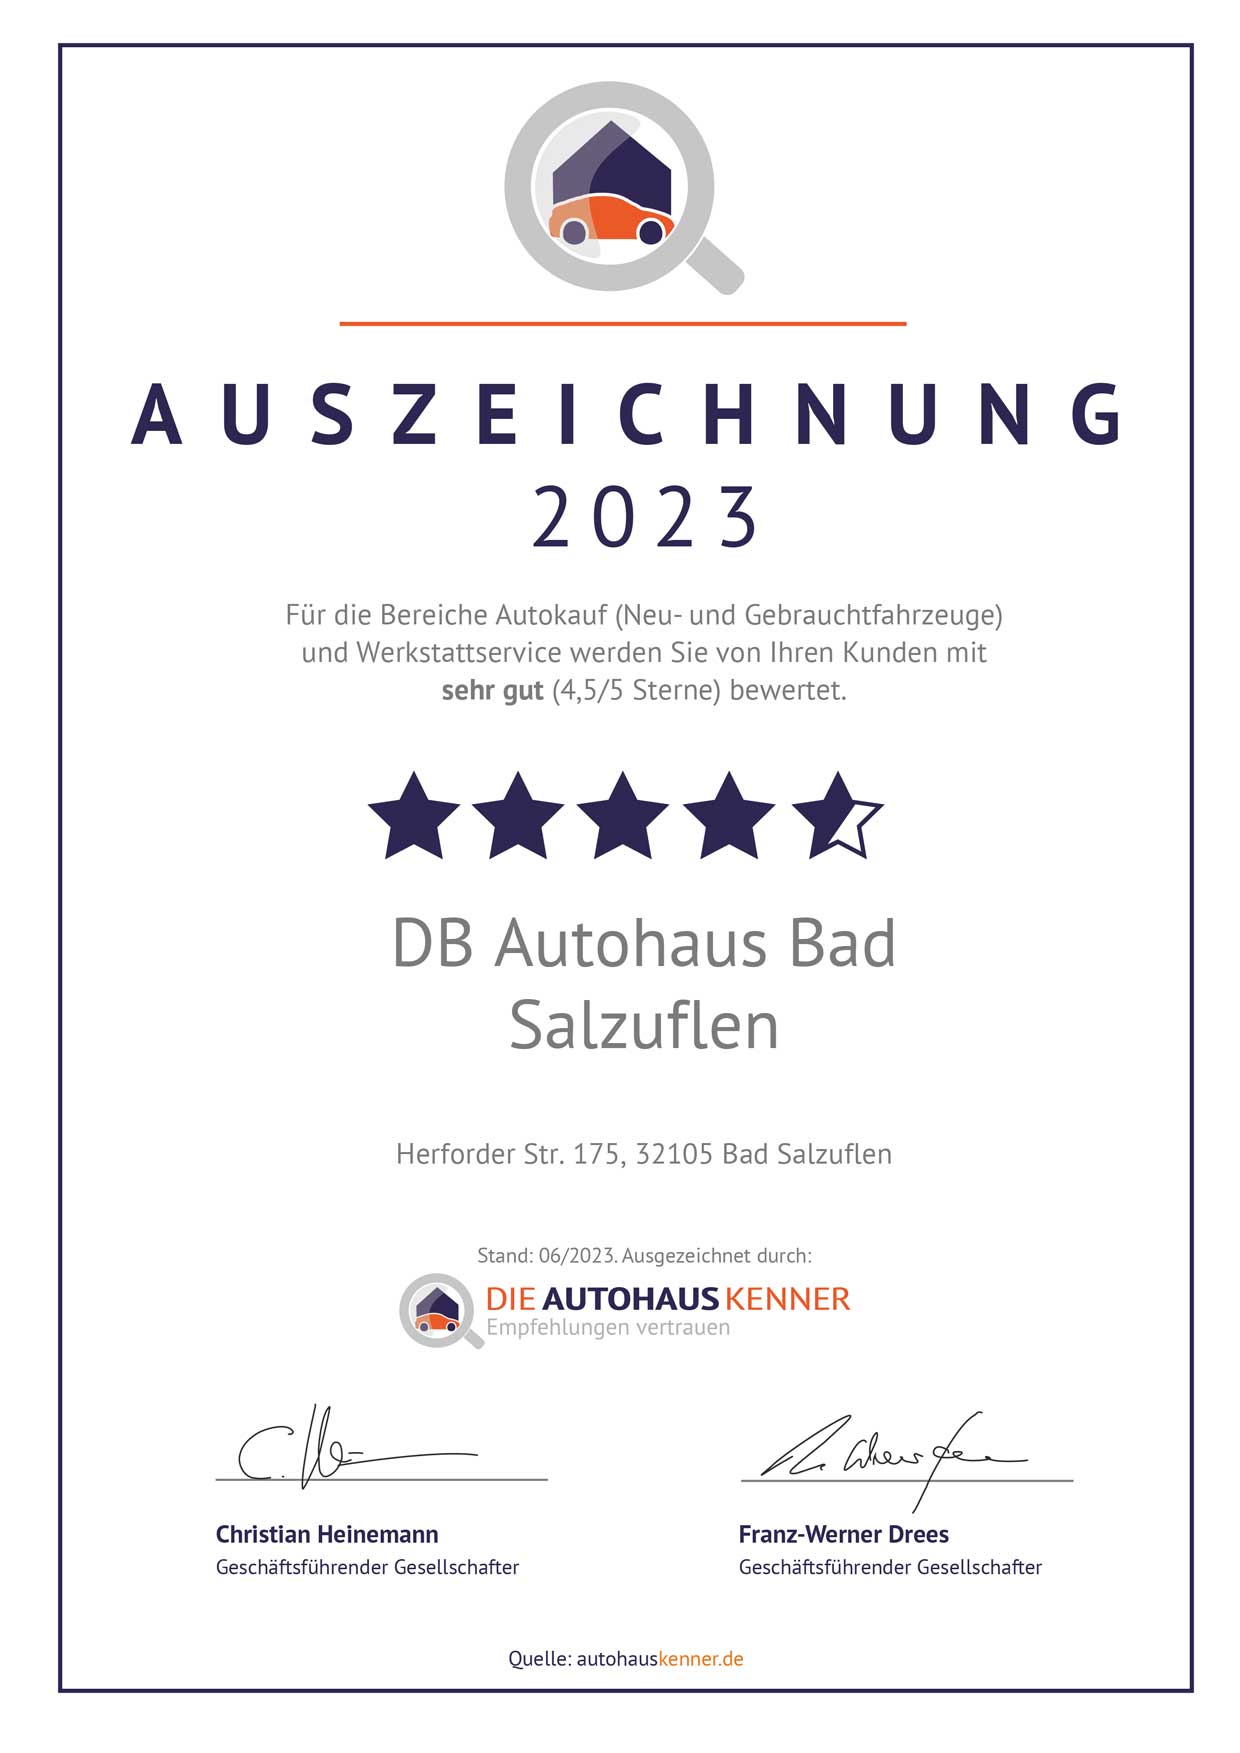 Auszeichnung von Autohauskenner für DB Autohaus Bad Salzuflen 2023